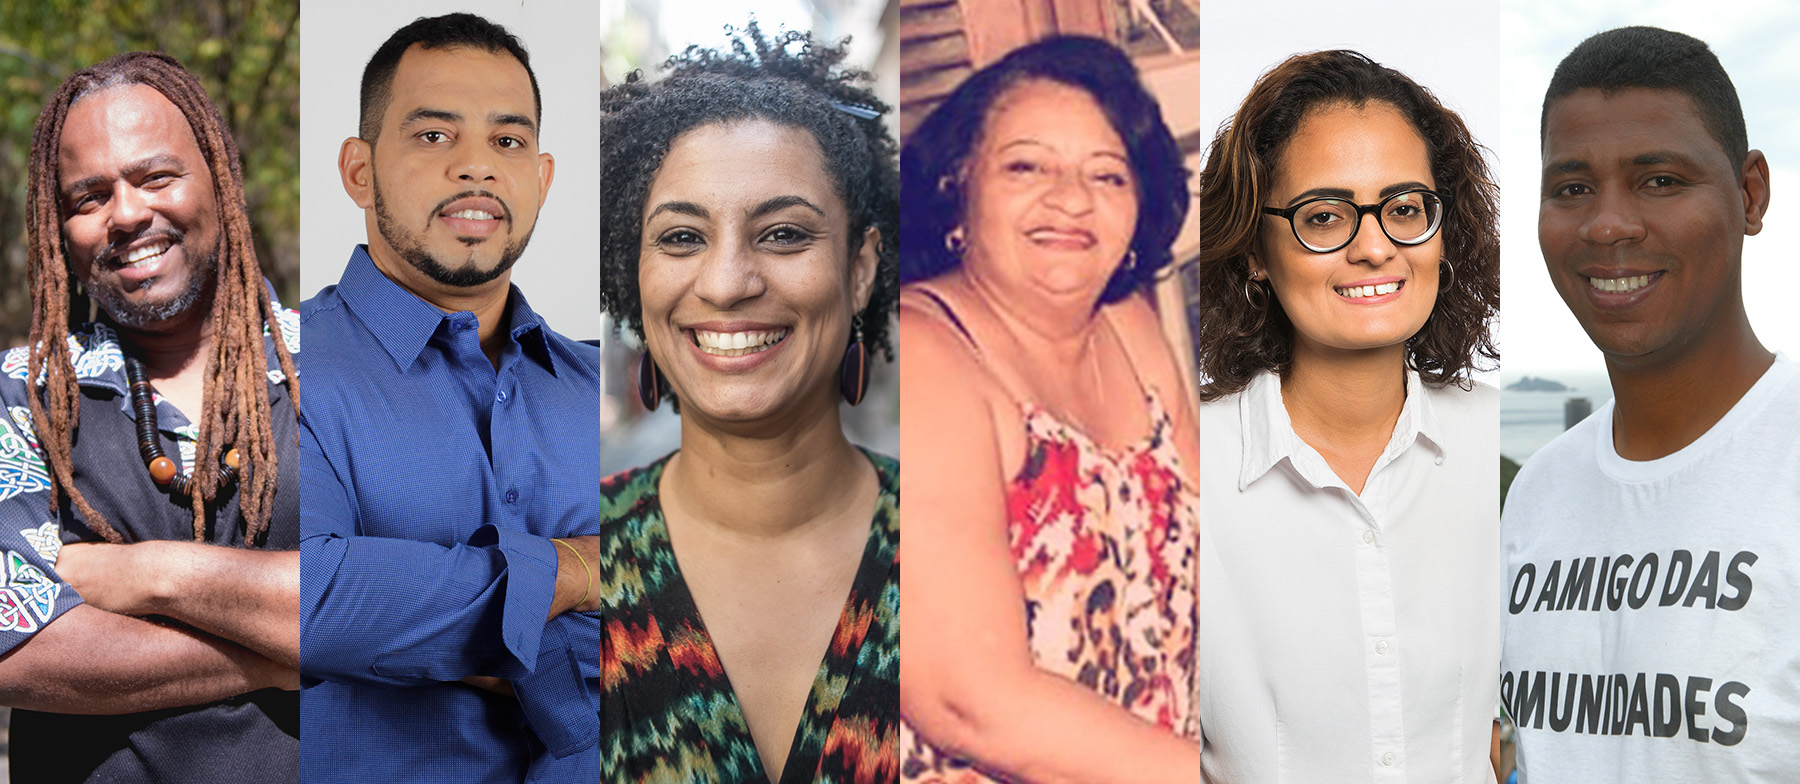 Eleições 2016: quem são os candidatos a vereador da favela?